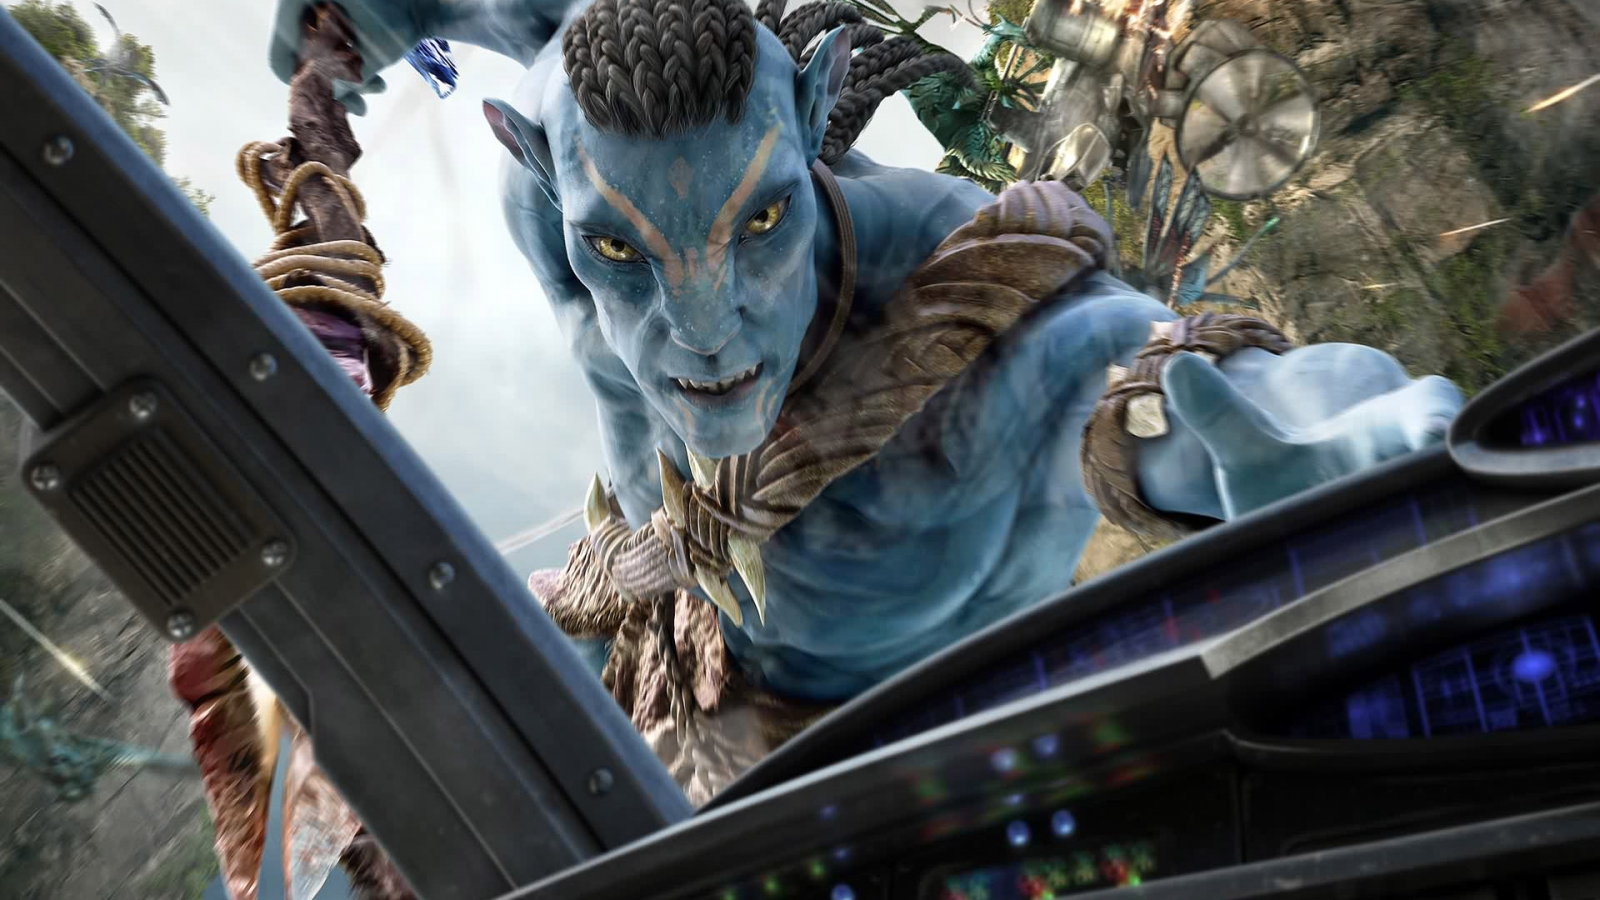 Avatar for 1600 x 900 HDTV resolution